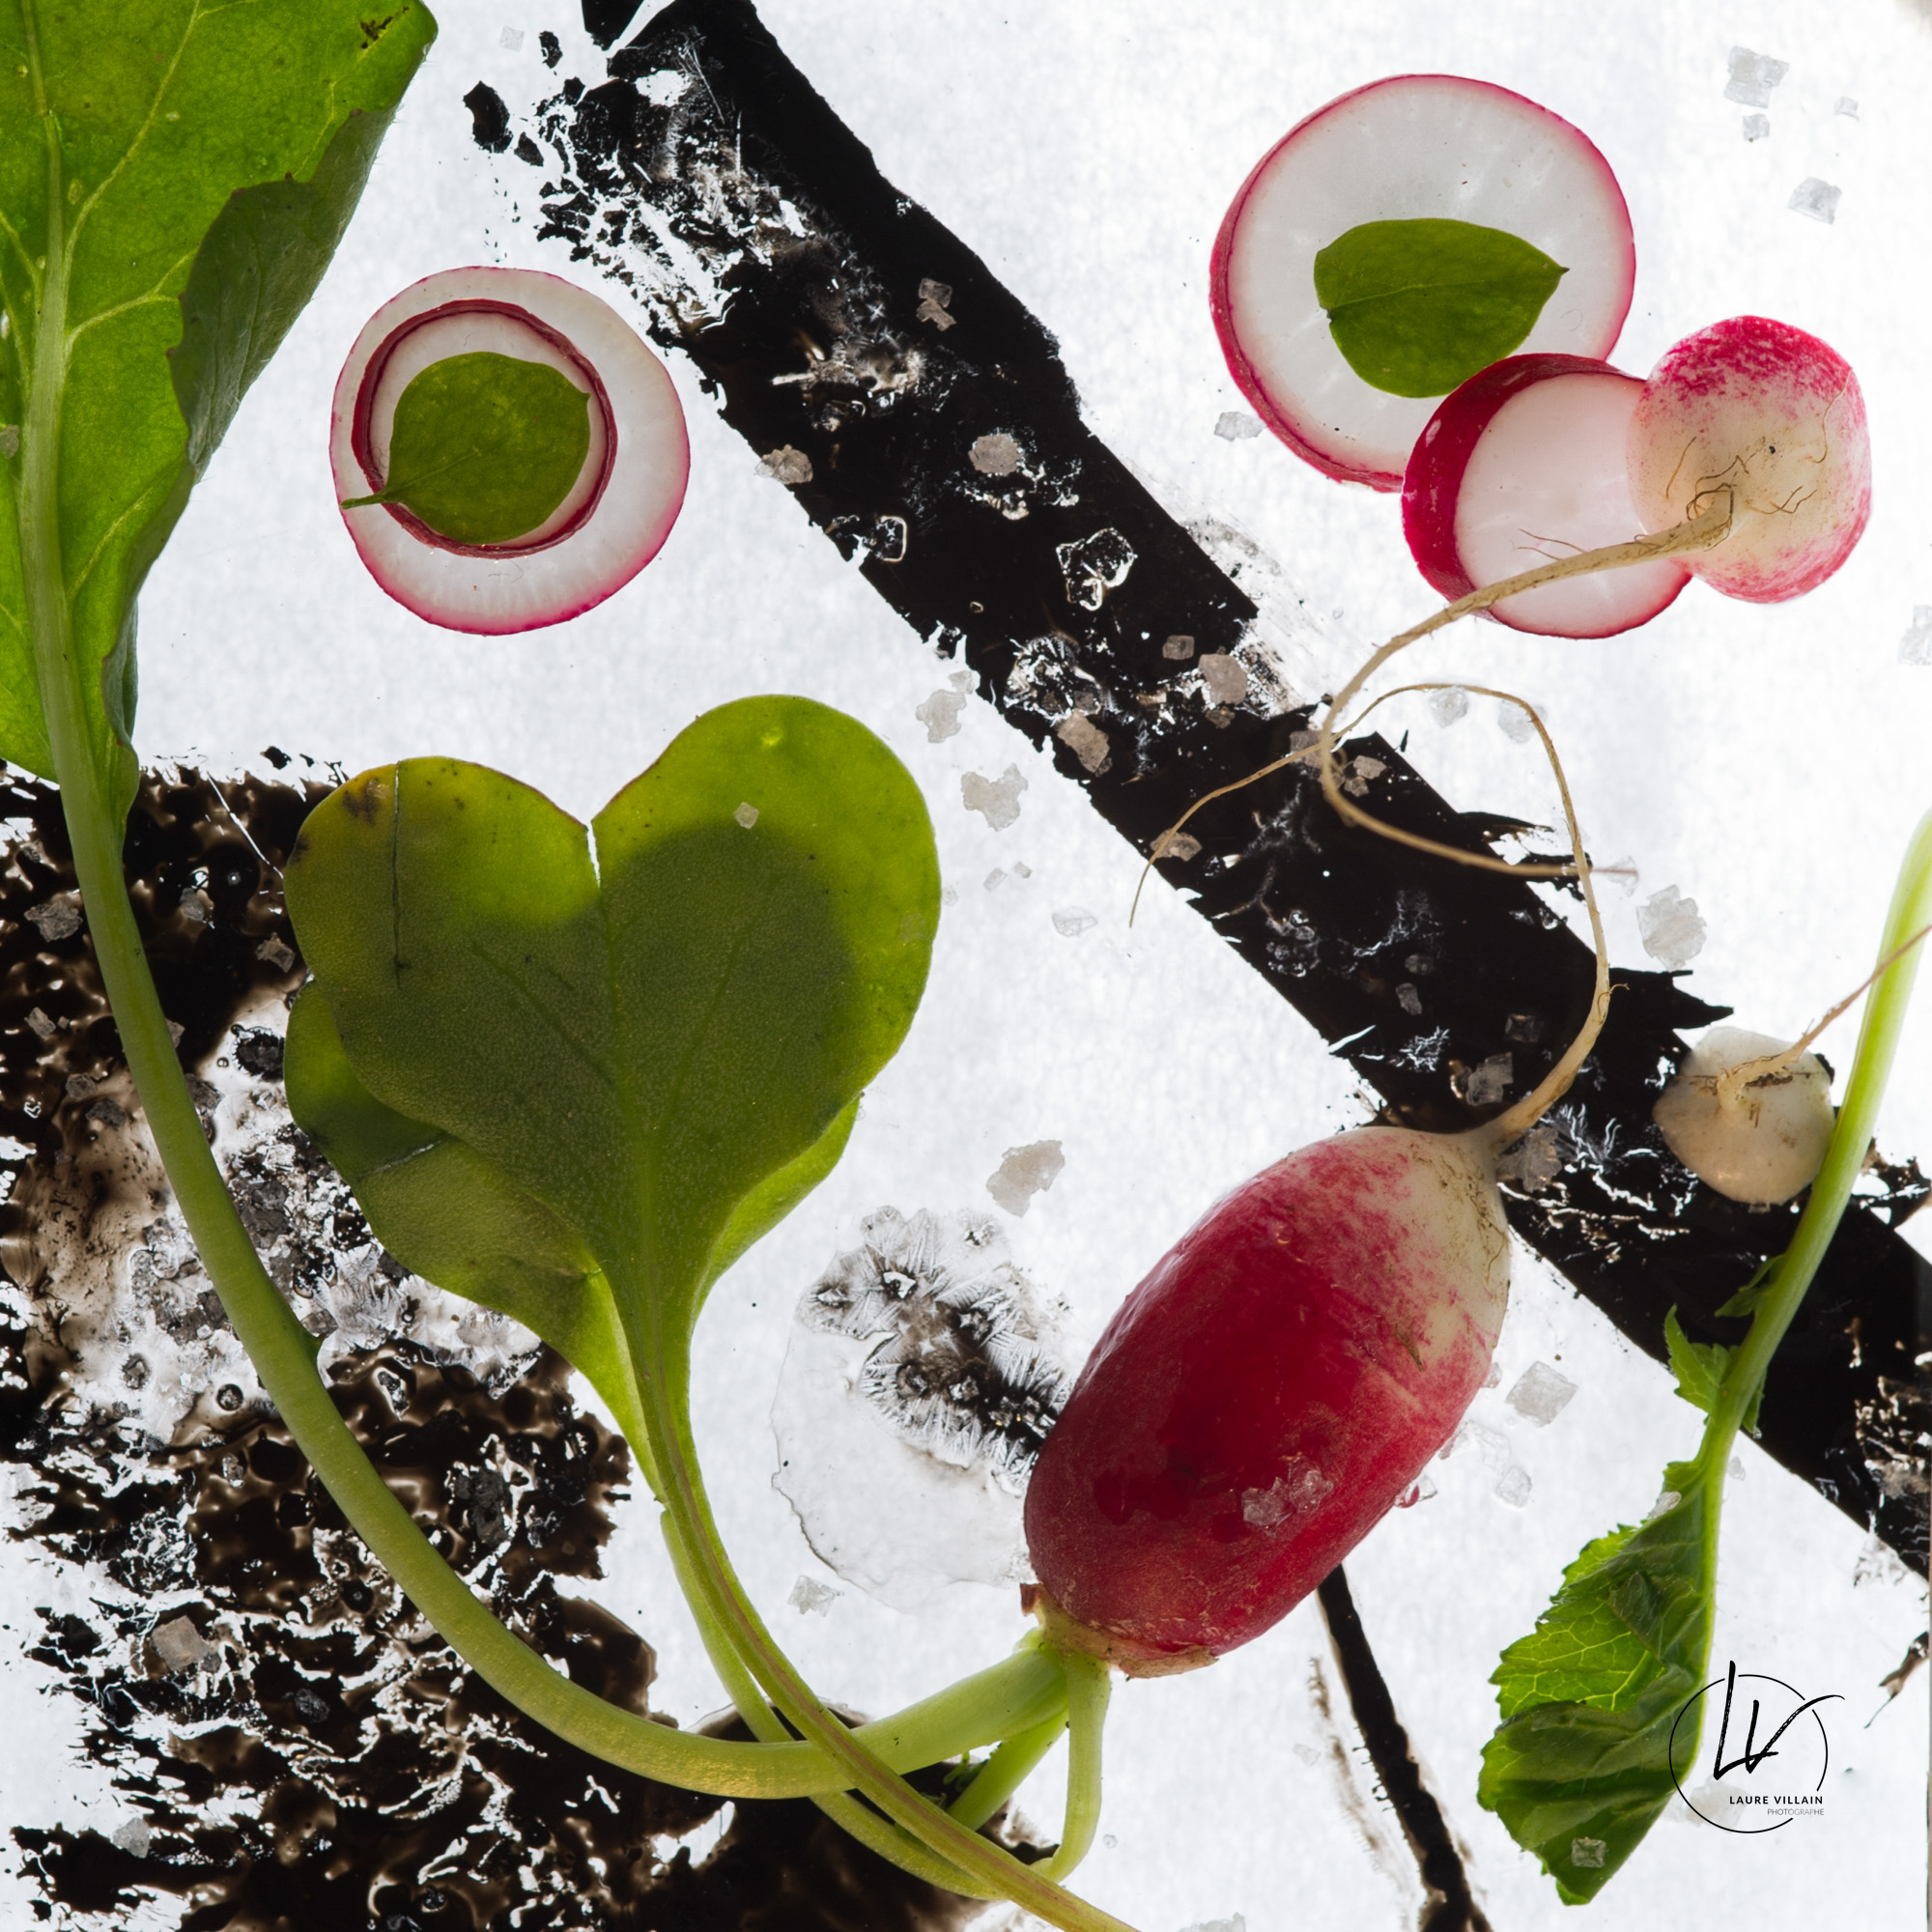 Photographe culinaire - Art à déguster - radis croque au sel N° 1 - Bourgogne